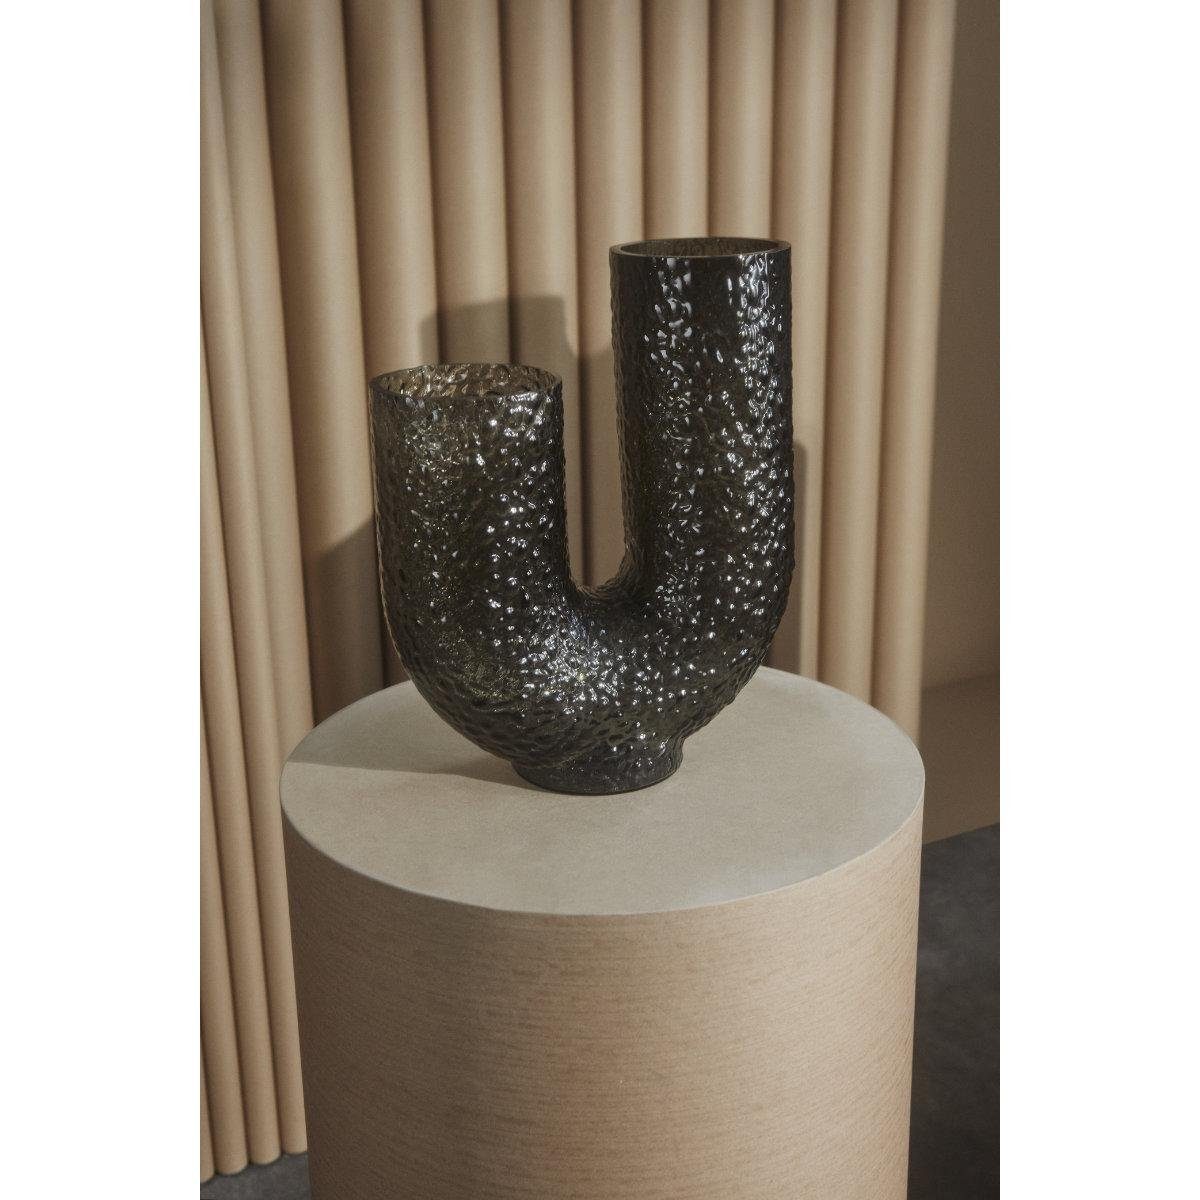 Arura Dekovase (Low) Aytm Vase